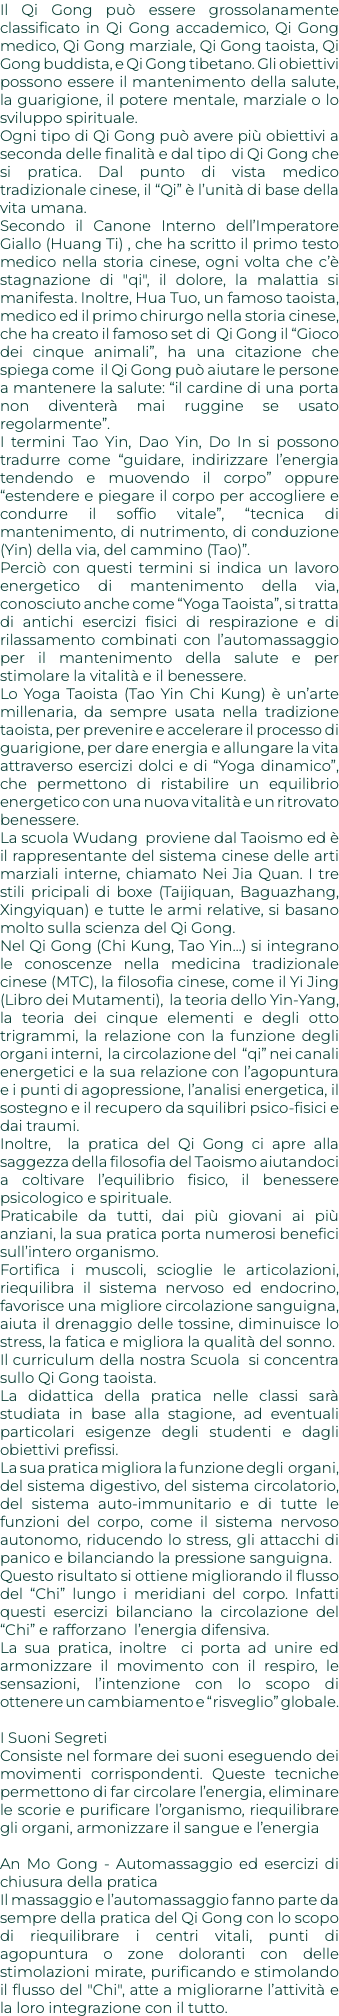 Il Qi Gong può essere grossolanamente classificato in Qi Gong accademico, Qi Gong medico, Qi Gong marziale, Qi Gong taoista, Qi Gong buddista, e Qi Gong tibetano. Gli obiettivi possono essere il mantenimento della salute, la guarigione, il potere mentale, marziale o lo sviluppo spirituale. Ogni tipo di Qi Gong può avere più obiettivi a seconda delle finalità e dal tipo di Qi Gong che si pratica. Dal punto di vista medico tradizionale cinese, il “Qi” è l’unità di base della vita umana. Secondo il Canone Interno dell’Imperatore Giallo (Huang Ti) , che ha scritto il primo testo medico nella storia cinese, ogni volta che c’è stagnazione di "qi", il dolore, la malattia si manifesta. Inoltre, Hua Tuo, un famoso taoista, medico ed il primo chirurgo nella storia cinese, che ha creato il famoso set di Qi Gong il “Gioco dei cinque animali”, ha una citazione che spiega come il Qi Gong può aiutare le persone a mantenere la salute: “il cardine di una porta non diventerà mai ruggine se usato regolarmente”. I termini Tao Yin, Dao Yin, Do In si possono tradurre come “guidare, indirizzare l’energia tendendo e muovendo il corpo” oppure “estendere e piegare il corpo per accogliere e condurre il soffio vitale”, “tecnica di mantenimento, di nutrimento, di conduzione (Yin) della via, del cammino (Tao)”. Perciò con questi termini si indica un lavoro energetico di mantenimento della via, conosciuto anche come “Yoga Taoista”, si tratta di antichi esercizi fisici di respirazione e di rilassamento combinati con l’automassaggio per il mantenimento della salute e per stimolare la vitalità e il benessere. Lo Yoga Taoista (Tao Yin Chi Kung) è un’arte millenaria, da sempre usata nella tradizione taoista, per prevenire e accelerare il processo di guarigione, per dare energia e allungare la vita attraverso esercizi dolci e di “Yoga dinamico”, che permettono di ristabilire un equilibrio energetico con una nuova vitalità e un ritrovato benessere. La scuola Wudang proviene dal Taoismo ed è il rappresentante del sistema cinese delle arti marziali interne, chiamato Nei Jia Quan. I tre stili pricipali di boxe (Taijiquan, Baguazhang, Xingyiquan) e tutte le armi relative, si basano molto sulla scienza del Qi Gong. Nel Qi Gong (Chi Kung, Tao Yin...) si integrano le conoscenze nella medicina tradizionale cinese (MTC), la filosofia cinese, come il Yi Jing (Libro dei Mutamenti), la teoria dello Yin-Yang, la teoria dei cinque elementi e degli otto trigrammi, la relazione con la funzione degli organi interni, la circolazione del “qi” nei canali energetici e la sua relazione con l’agopuntura e i punti di agopressione, l’analisi energetica, il sostegno e il recupero da squilibri psico-fisici e dai traumi. Inoltre, la pratica del Qi Gong ci apre alla saggezza della filosofia del Taoismo aiutandoci a coltivare l’equilibrio fisico, il benessere psicologico e spirituale. Praticabile da tutti, dai più giovani ai più anziani, la sua pratica porta numerosi benefici sull’intero organismo. Fortifica i muscoli, scioglie le articolazioni, riequilibra il sistema nervoso ed endocrino, favorisce una migliore circolazione sanguigna, aiuta il drenaggio delle tossine, diminuisce lo stress, la fatica e migliora la qualità del sonno. Il curriculum della nostra Scuola si concentra sullo Qi Gong taoista. La didattica della pratica nelle classi sarà studiata in base alla stagione, ad eventuali particolari esigenze degli studenti e dagli obiettivi prefissi. La sua pratica migliora la funzione degli organi, del sistema digestivo, del sistema circolatorio, del sistema auto-immunitario e di tutte le funzioni del corpo, come il sistema nervoso autonomo, riducendo lo stress, gli attacchi di panico e bilanciando la pressione sanguigna. Questo risultato si ottiene migliorando il flusso del “Chi” lungo i meridiani del corpo. Infatti questi esercizi bilanciano la circolazione del “Chi” e rafforzano l’energia difensiva. La sua pratica, inoltre ci porta ad unire ed armonizzare il movimento con il respiro, le sensazioni, l’intenzione con lo scopo di ottenere un cambiamento e “risveglio” globale. I Suoni Segreti Consiste nel formare dei suoni eseguendo dei movimenti corrispondenti. Queste tecniche permettono di far circolare l’energia, eliminare le scorie e purificare l’organismo, riequilibrare gli organi, armonizzare il sangue e l’energia An Mo Gong - Automassaggio ed esercizi di chiusura della pratica Il massaggio e l’automassaggio fanno parte da sempre della pratica del Qi Gong con lo scopo di riequilibrare i centri vitali, punti di agopuntura o zone doloranti con delle stimolazioni mirate, purificando e stimolando il flusso del "Chi", atte a migliorarne l’attività e la loro integrazione con il tutto.